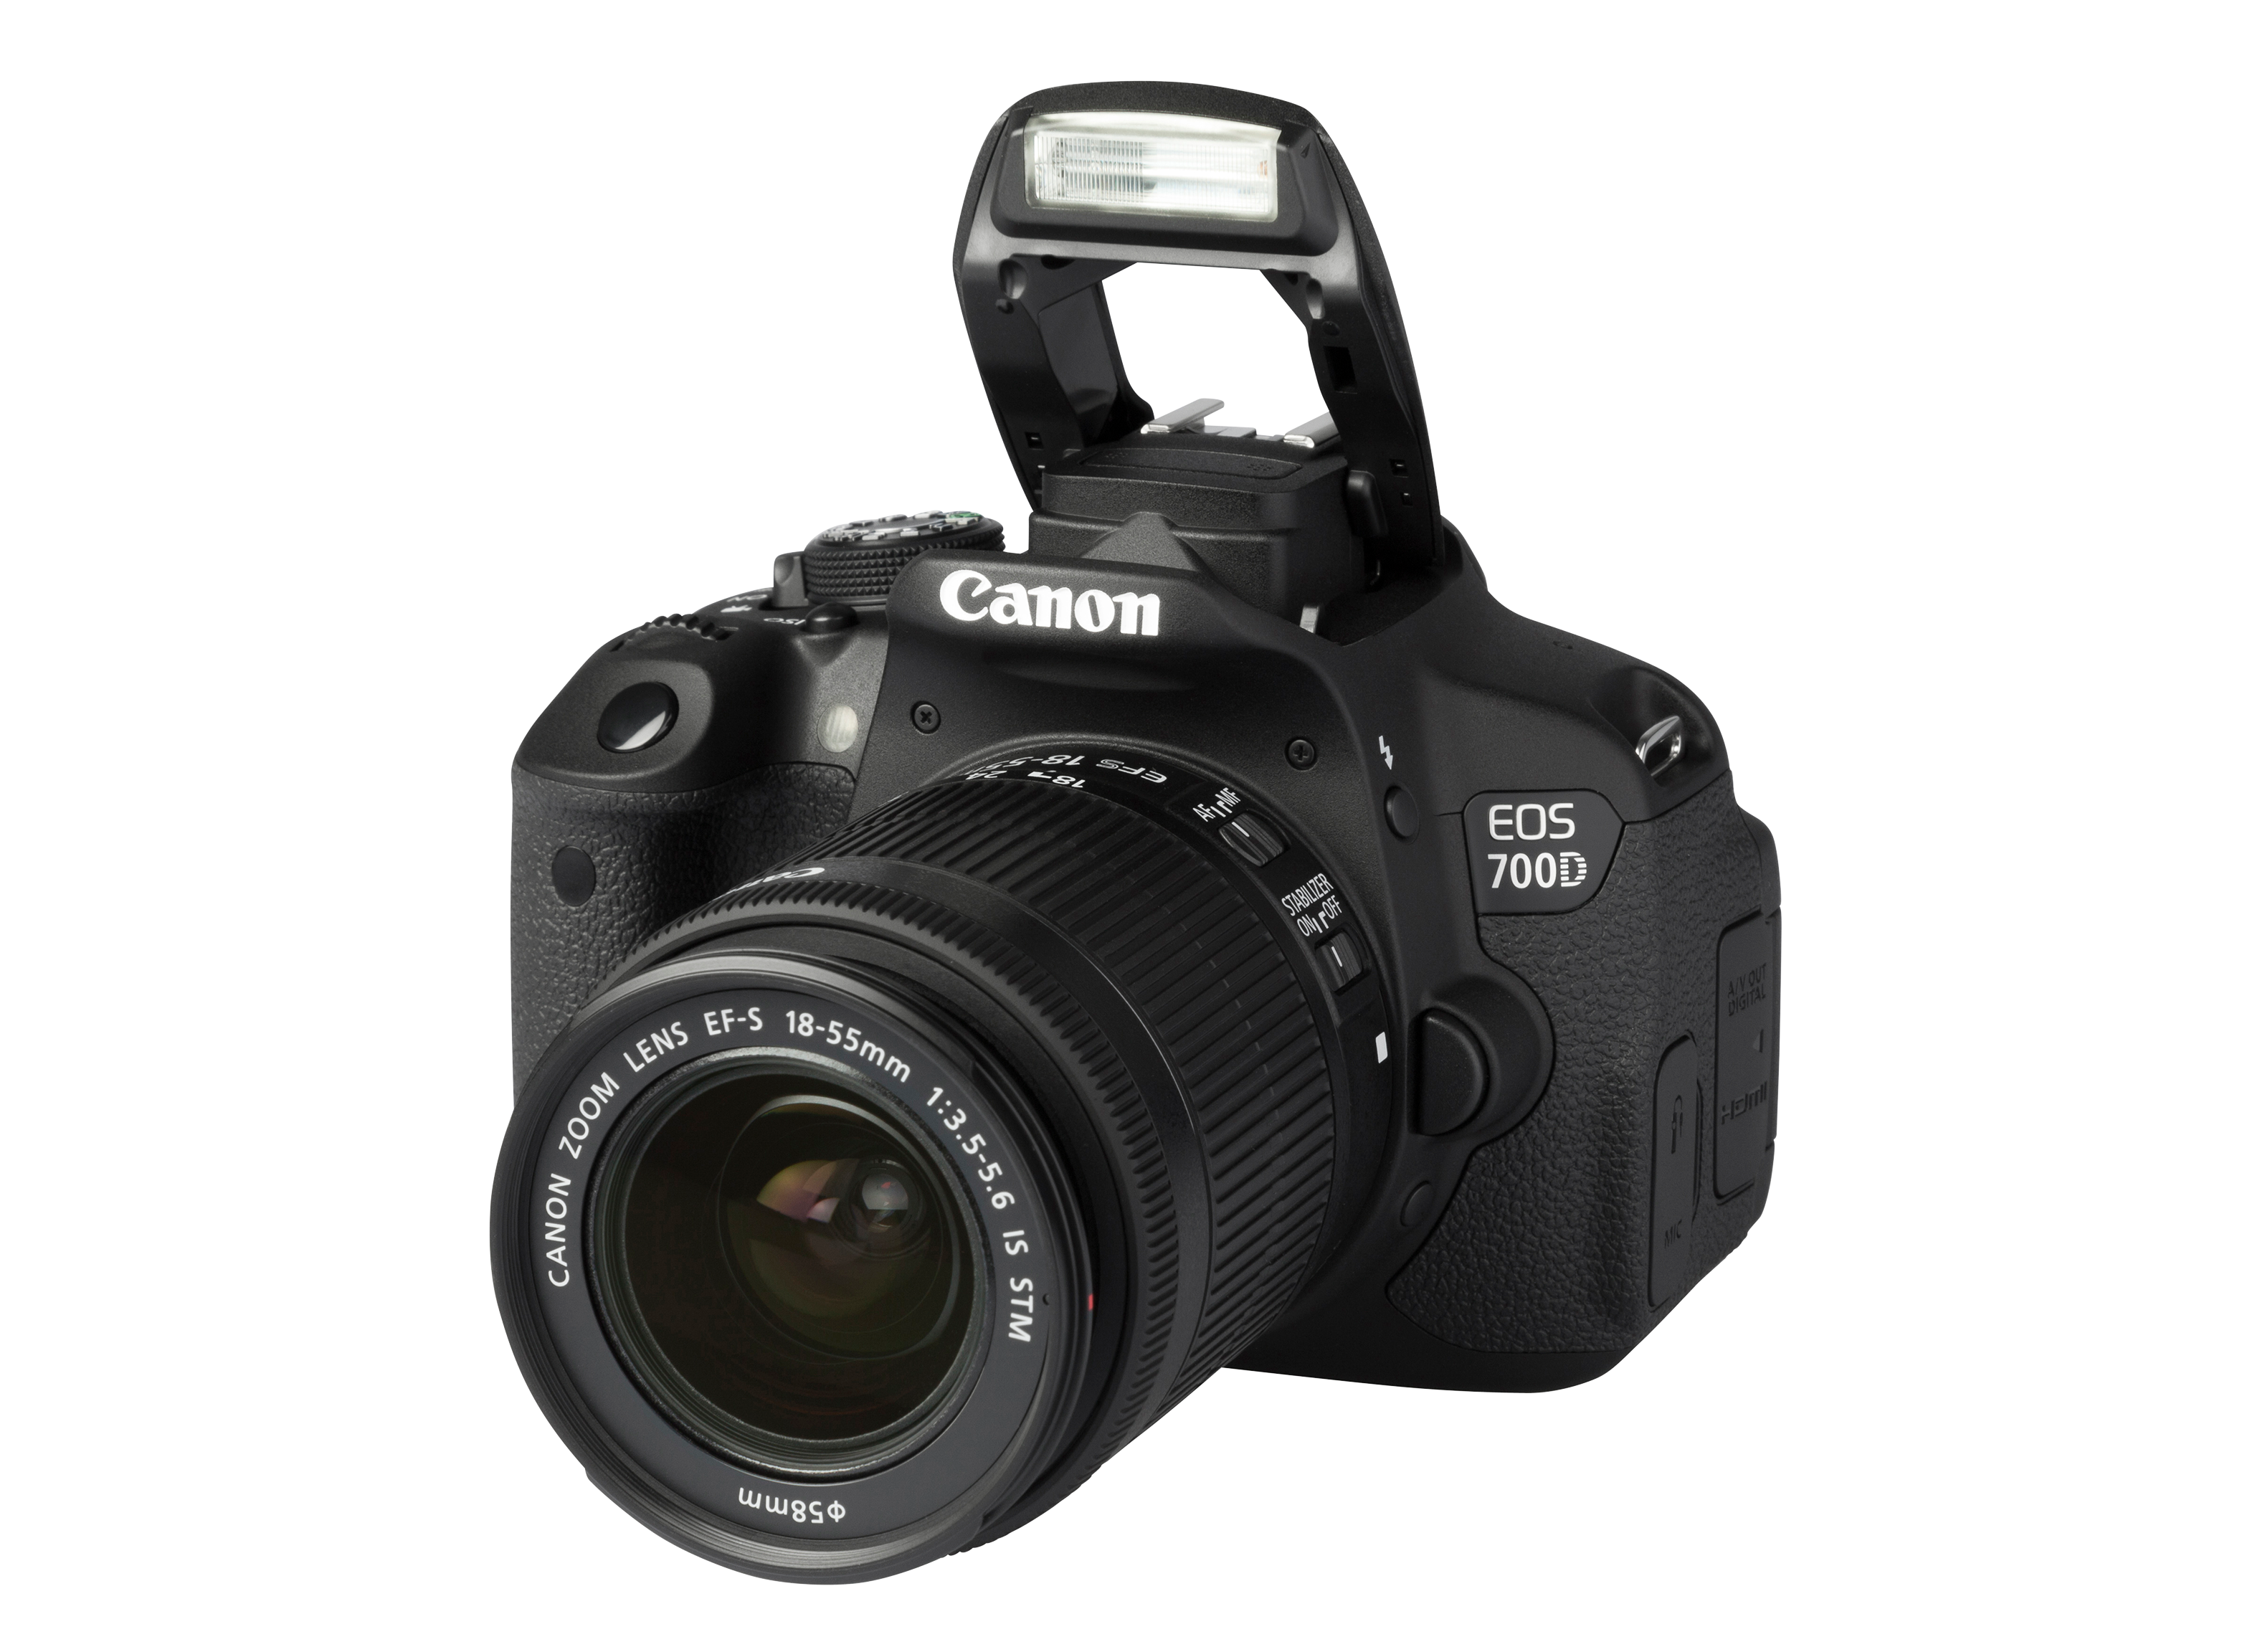 Canon EOS 700D Rebel T5i w/ EF-S 18-55mm là một trong những chiếc máy ảnh được người tiêu dùng đánh giá cao với những tính năng ưu việt. Máy ảnh này không chỉ giúp bạn chụp ảnh đẹp mà còn đem lại trải nghiệm chụp ảnh tuyệt vời. Từ khả năng chuyển đổi nhanh giữa chế độ chụp ảnh và quay phim, đến khả năng kết nối wifi, Canon EOS 700D Rebel T5i w/ EF-S 18-55mm là một sự lựa chọn tuyệt vời. Hãy xem thêm nhận xét từ người tiêu dùng để biết thêm chi tiết. 